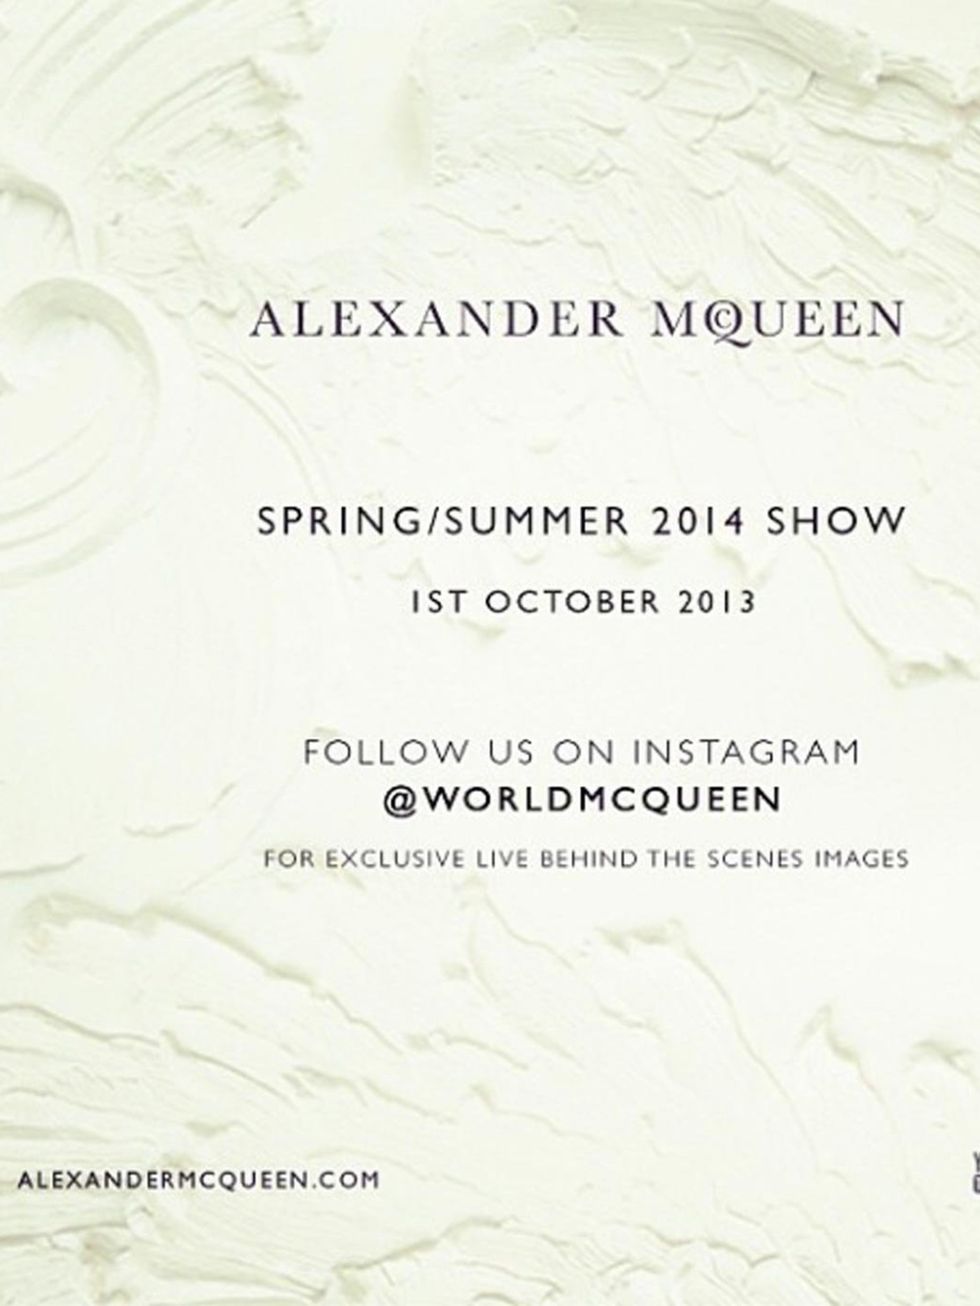 <p>Alexander McQueen (@WorldMcQueen)The Alexander McQueen Spring/Summer 2014 Show is tomorrow! Follow us on Instagram @WorldMcQueen for exclusive behind the scenes images.</p>